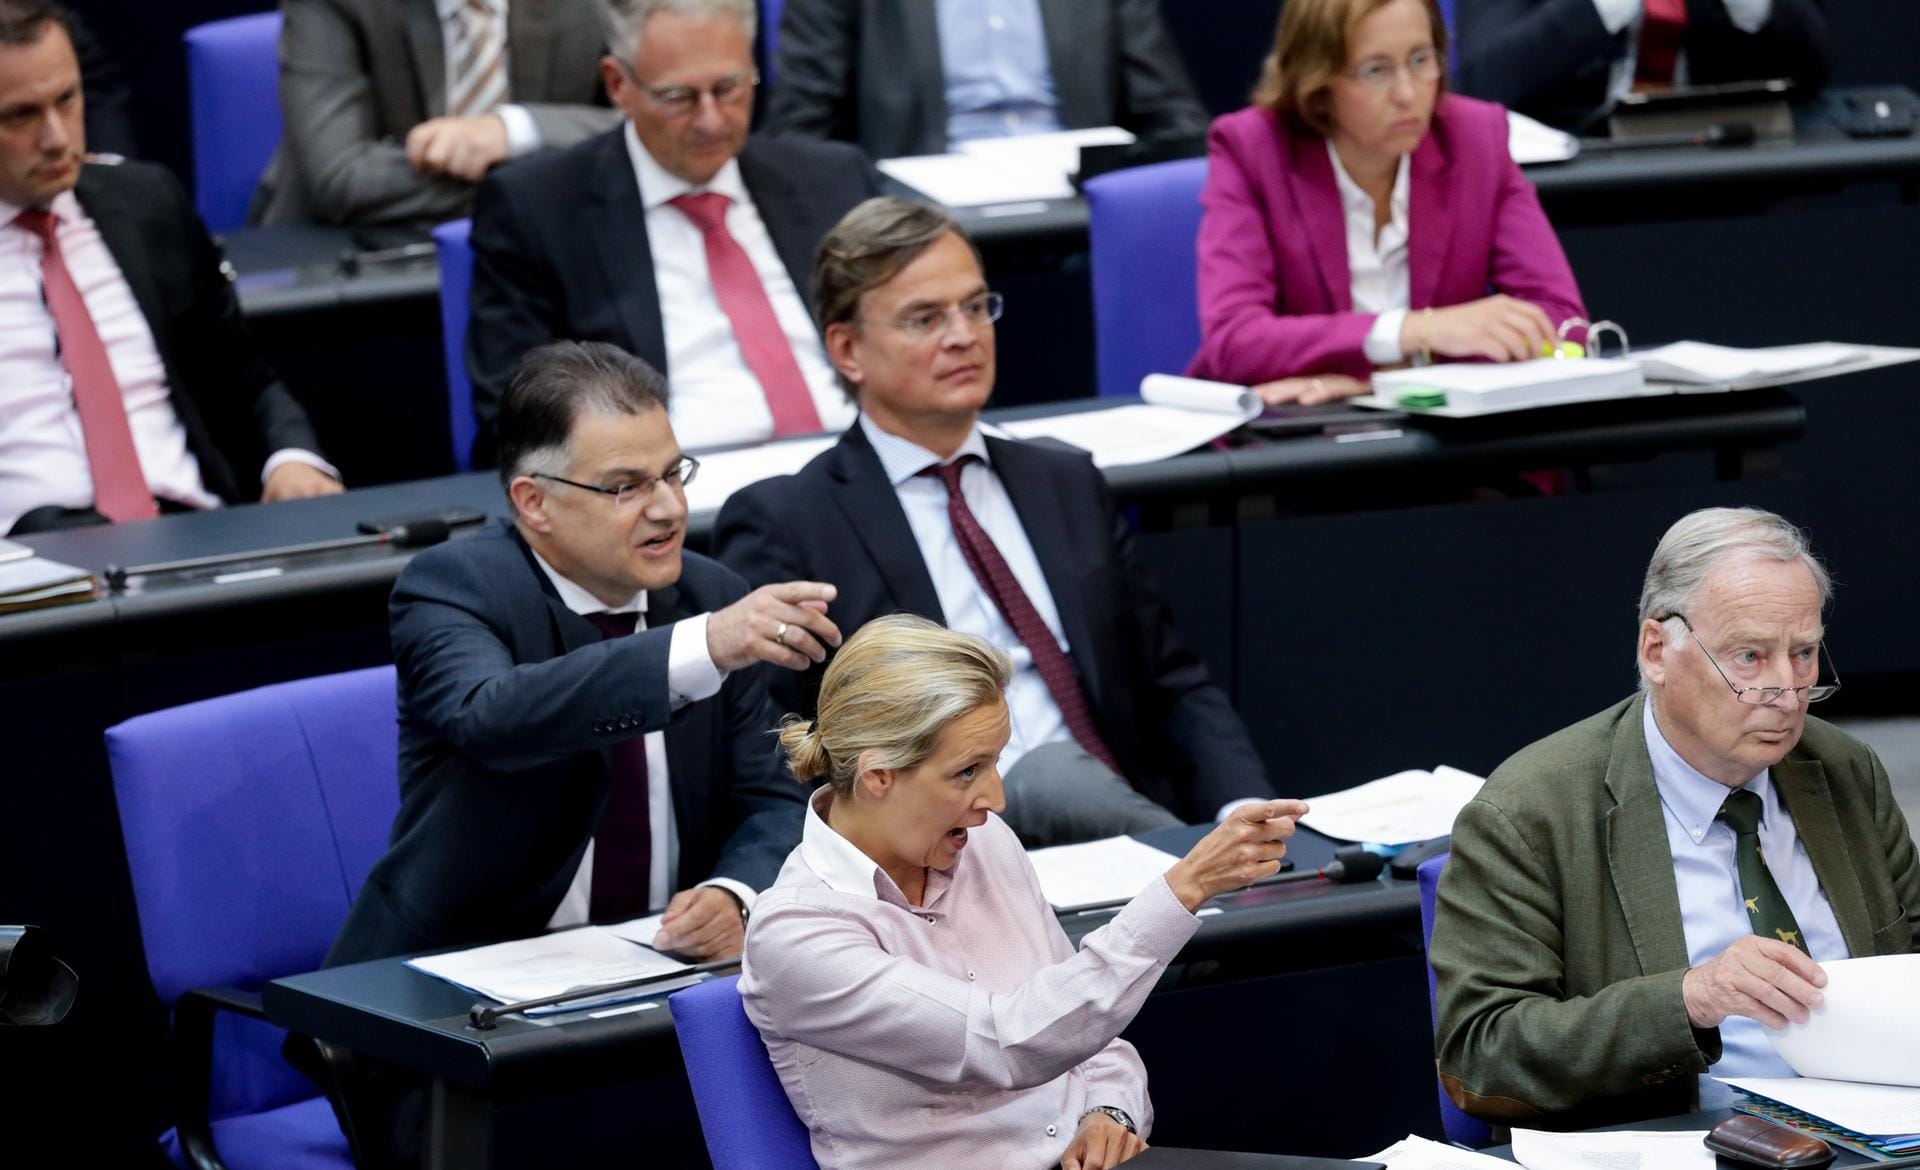 16. Mai 2018: Die große Koalition ist ja eigentlich gar nichts neues für Deutschland, im Gegenteil. Neu ist diesmal aber: die AfD sitzt im Bundestag. Kanzlerin Angela Merkel trifft so direkt auf ihre schärfsten Kritiker im Plenum. Es geht munter zu, wenn man es vorsichtig formulieren möchte.